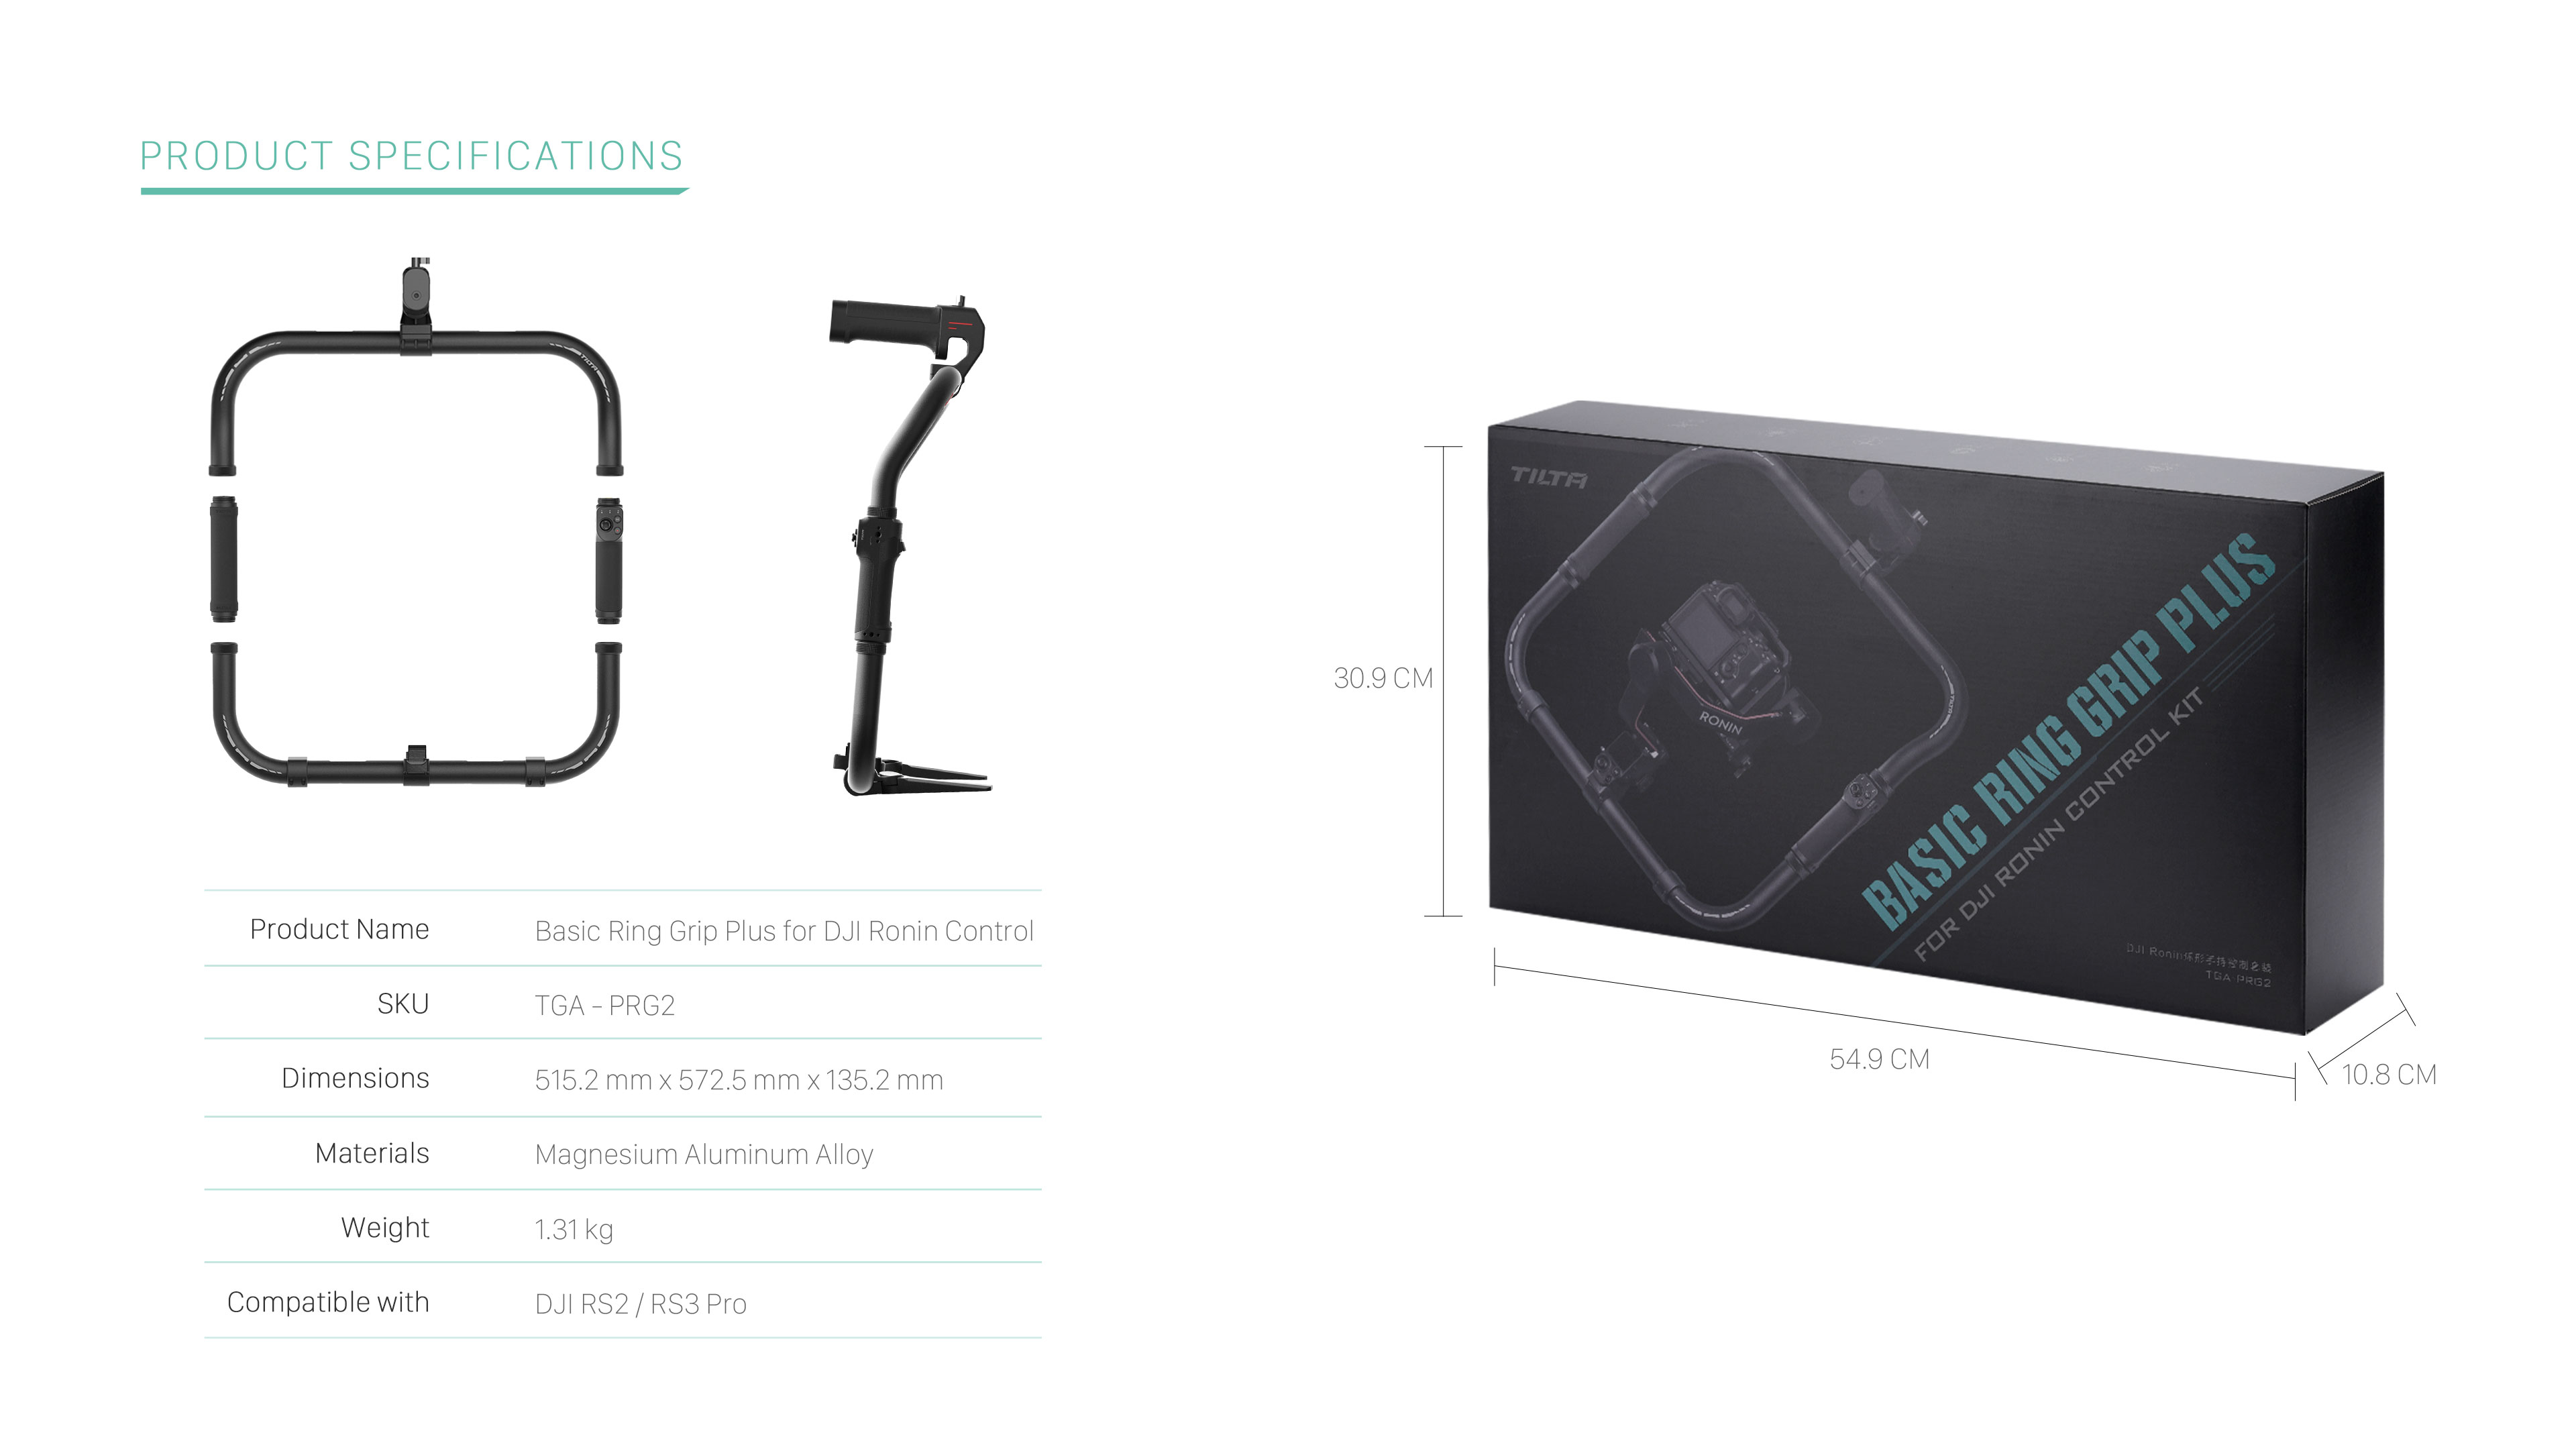 Basic Ring Grip Plus for DJI Ronin Control Kit